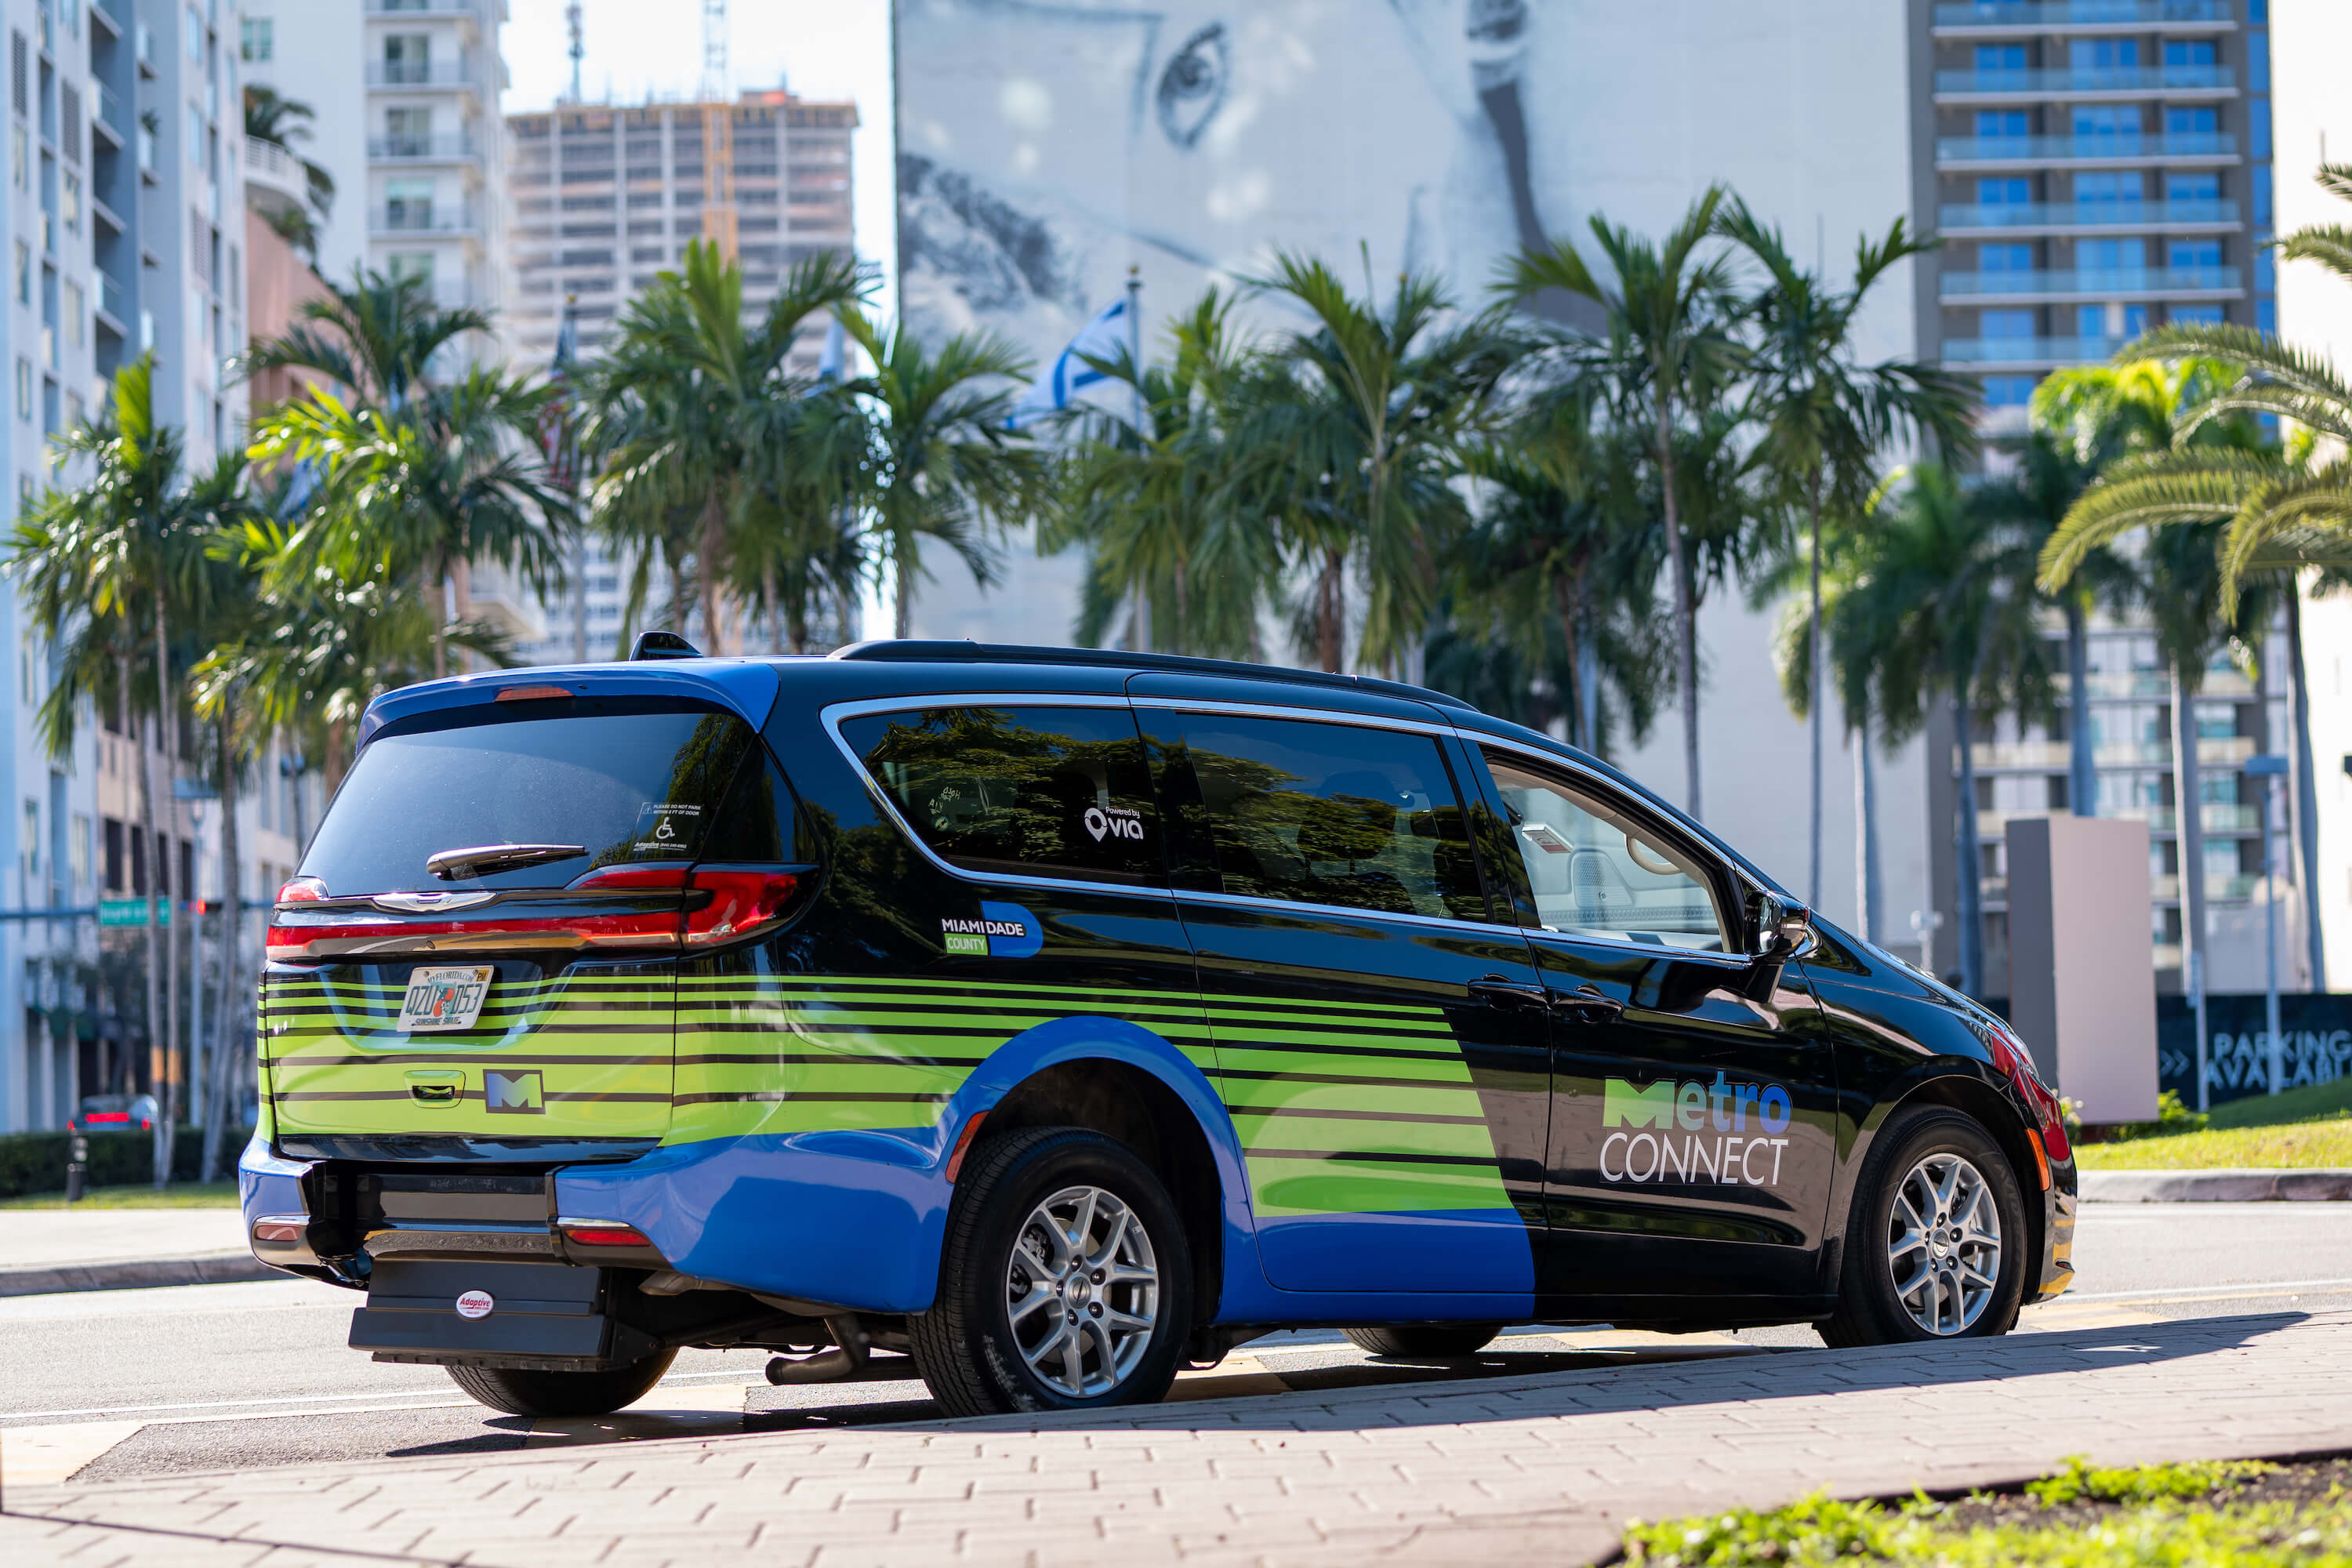 Miami Metro Connect vehicle